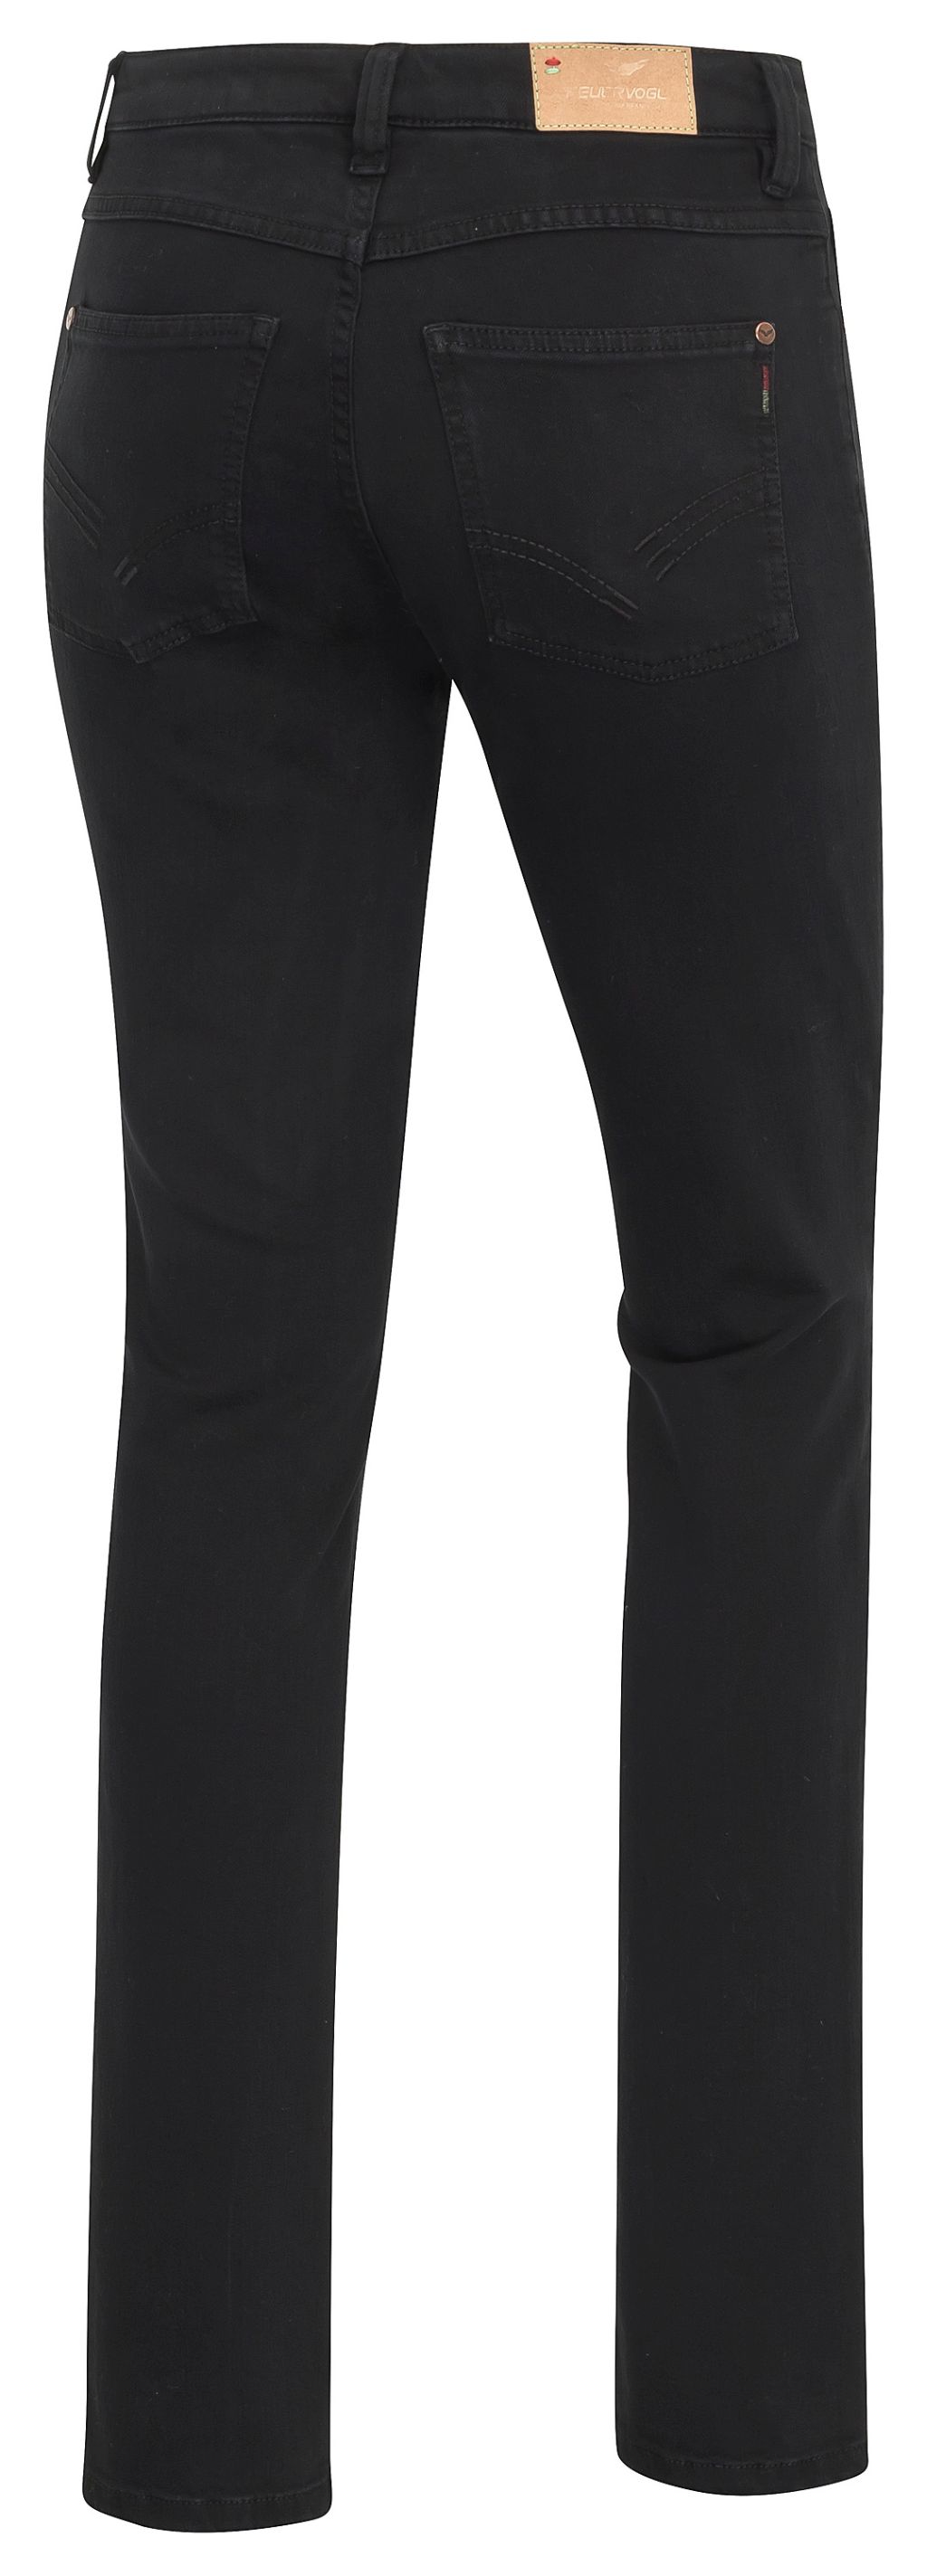 Svenja Black-Black Slim Fit Medium Waist Jeans - Bio-Baumwolle 34